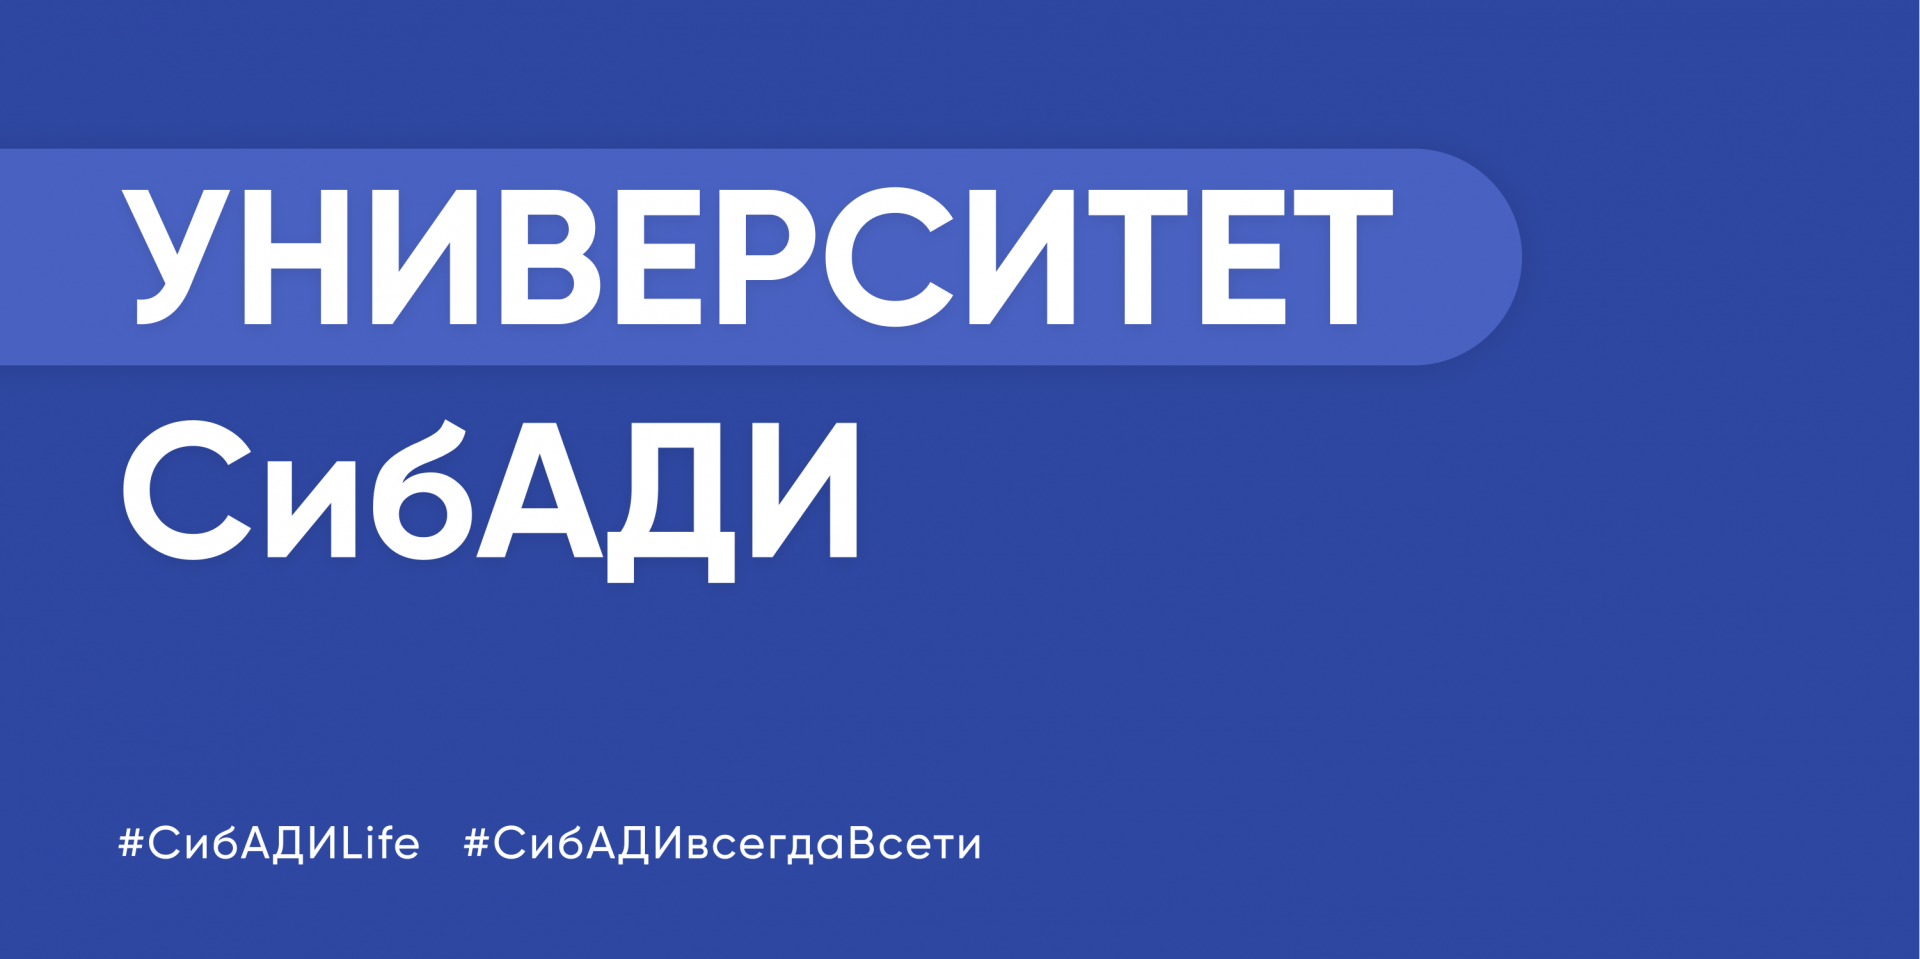 ФГБОУ ВО "СибАДИ" объявляет выборы декана